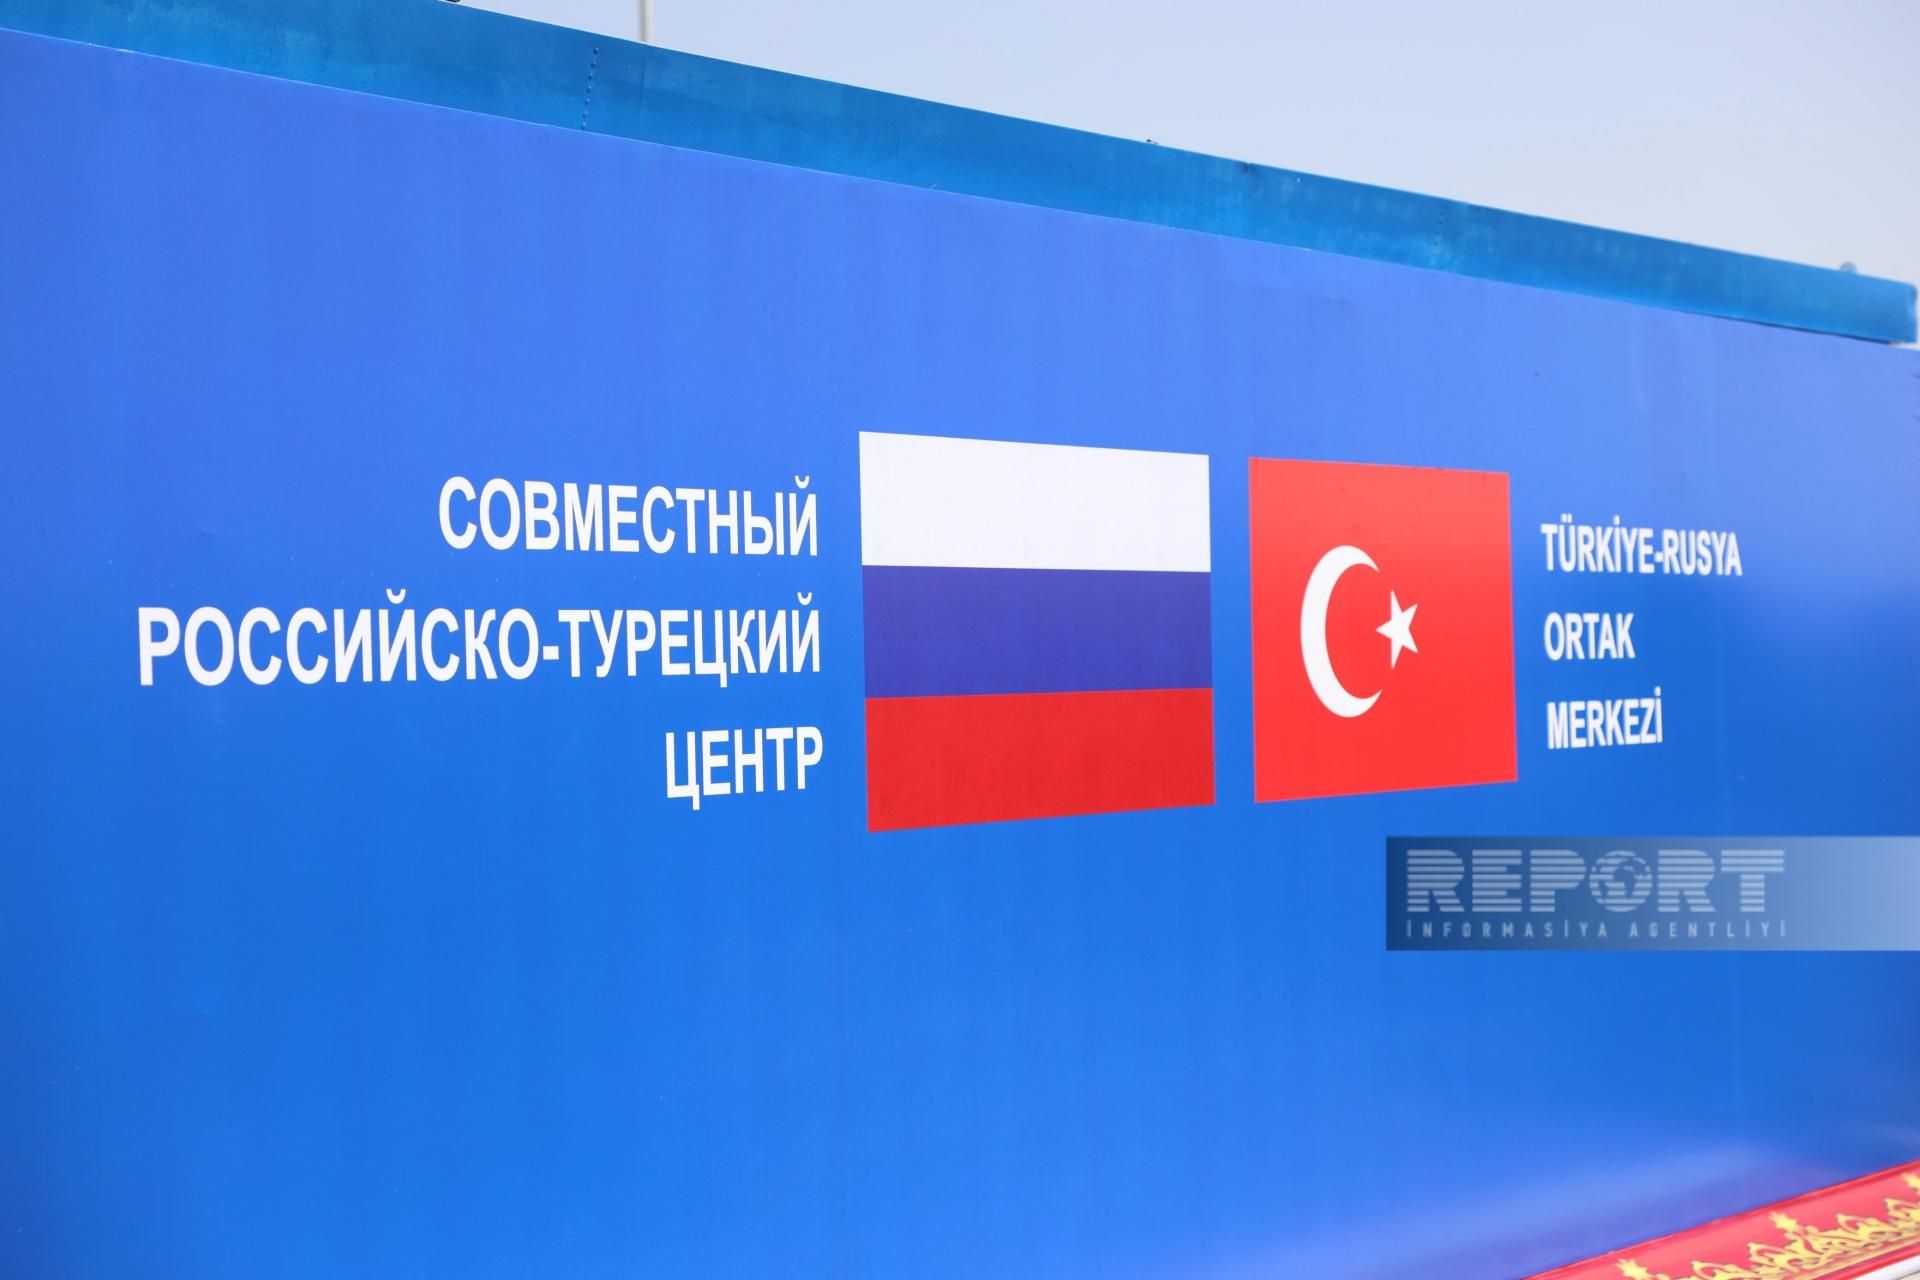 Türkiyə-Rusiya Birgə Monitorinq Mərkəzinin bağlanış mərasimi keçirildi -  FOTO